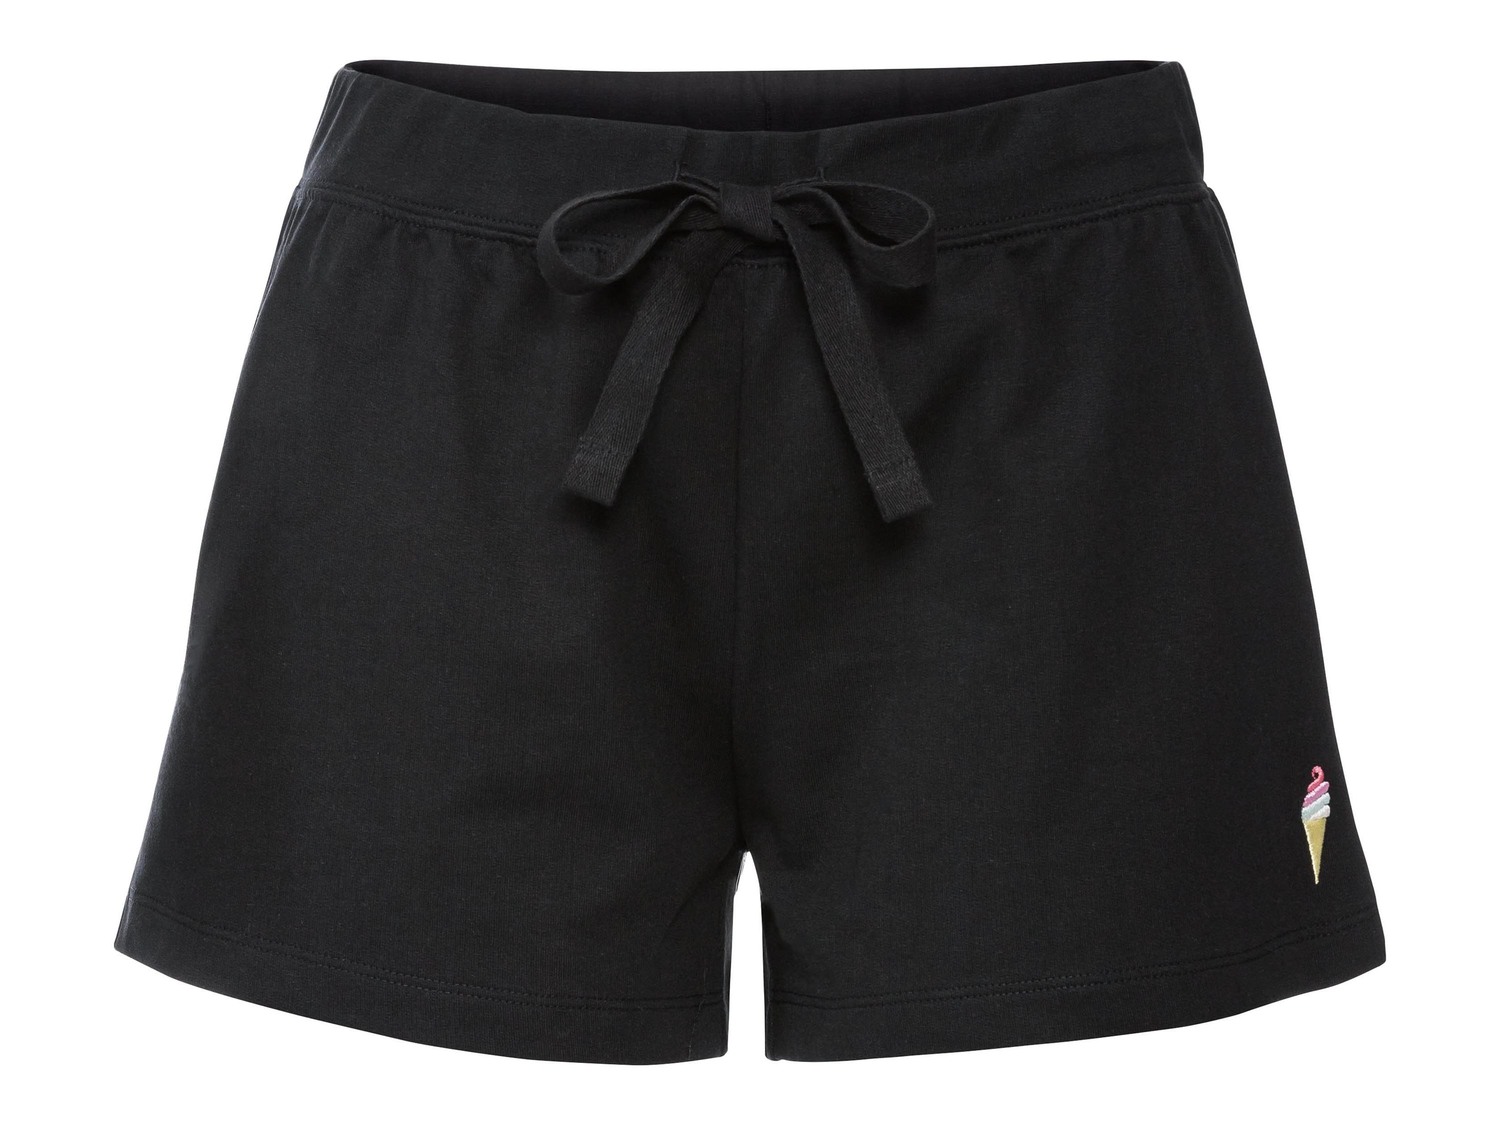 Shorts da donna Esmara, prezzo 3.99 &#8364;  
Misure: S-L